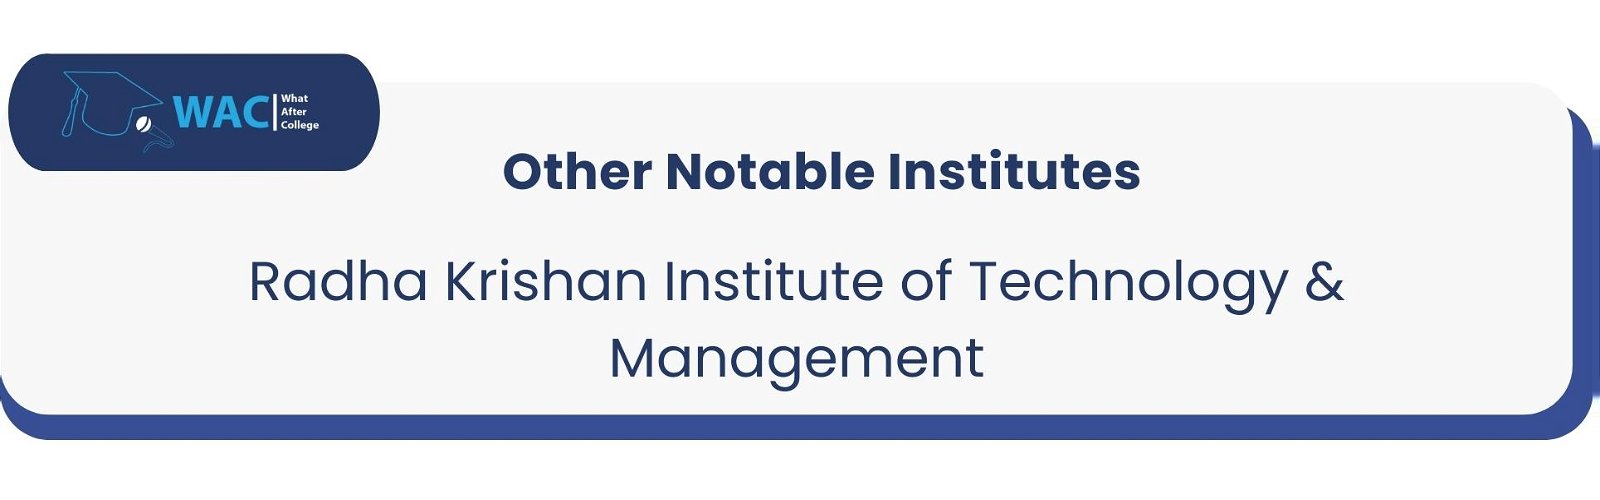 Radha Krishan Institute of Technology & Management